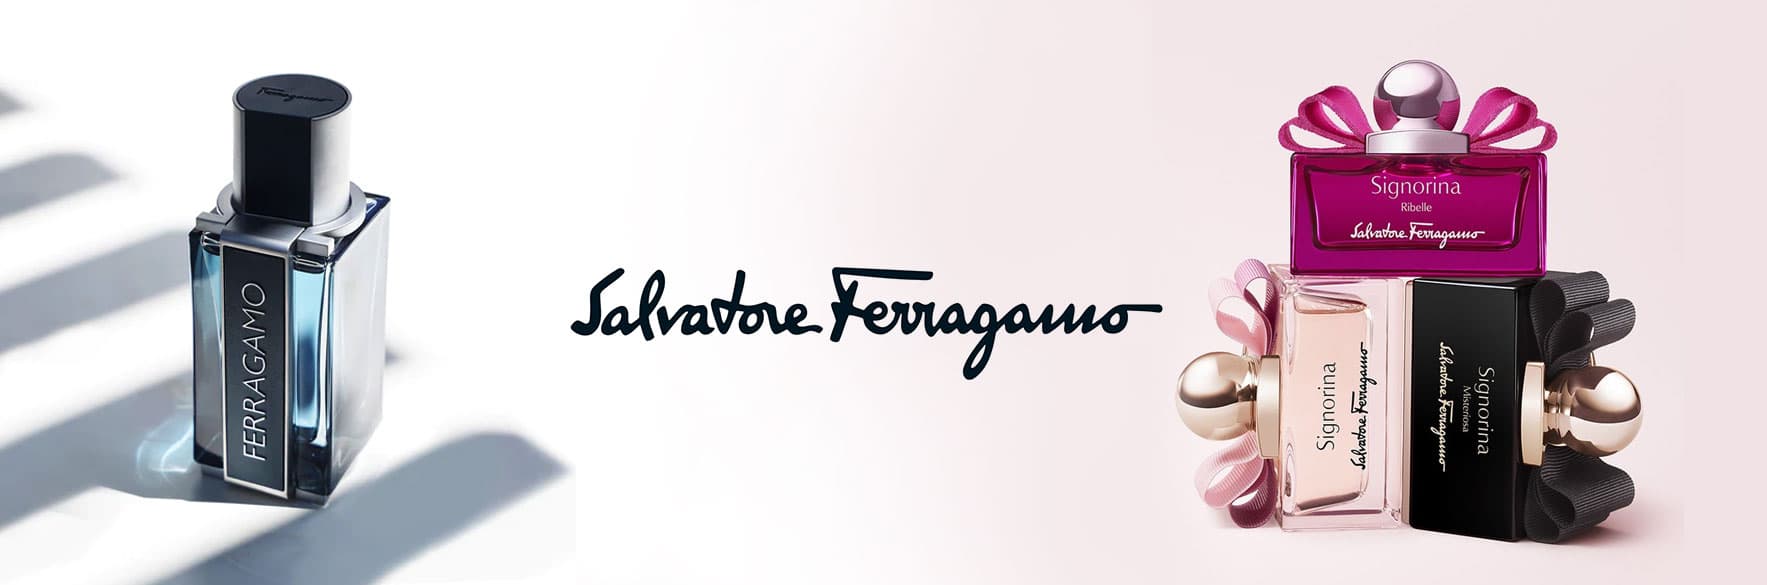 خرید محصولات سالواتوره فراگامو SALVATORE FERRAGAMO